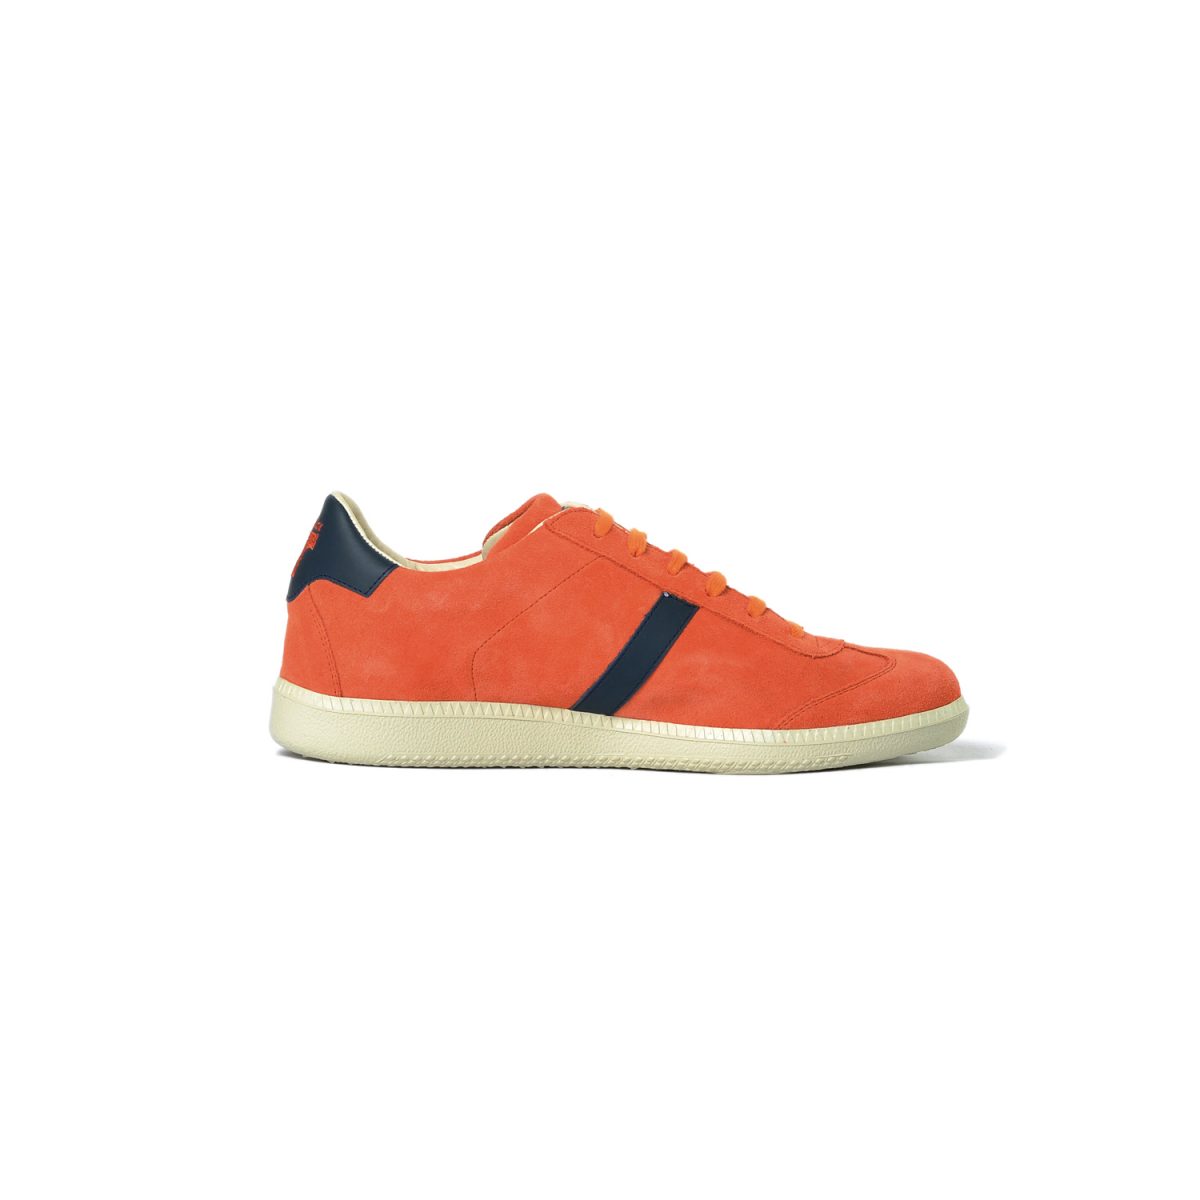 Tisza cipő - Comfort - Narancs-kék